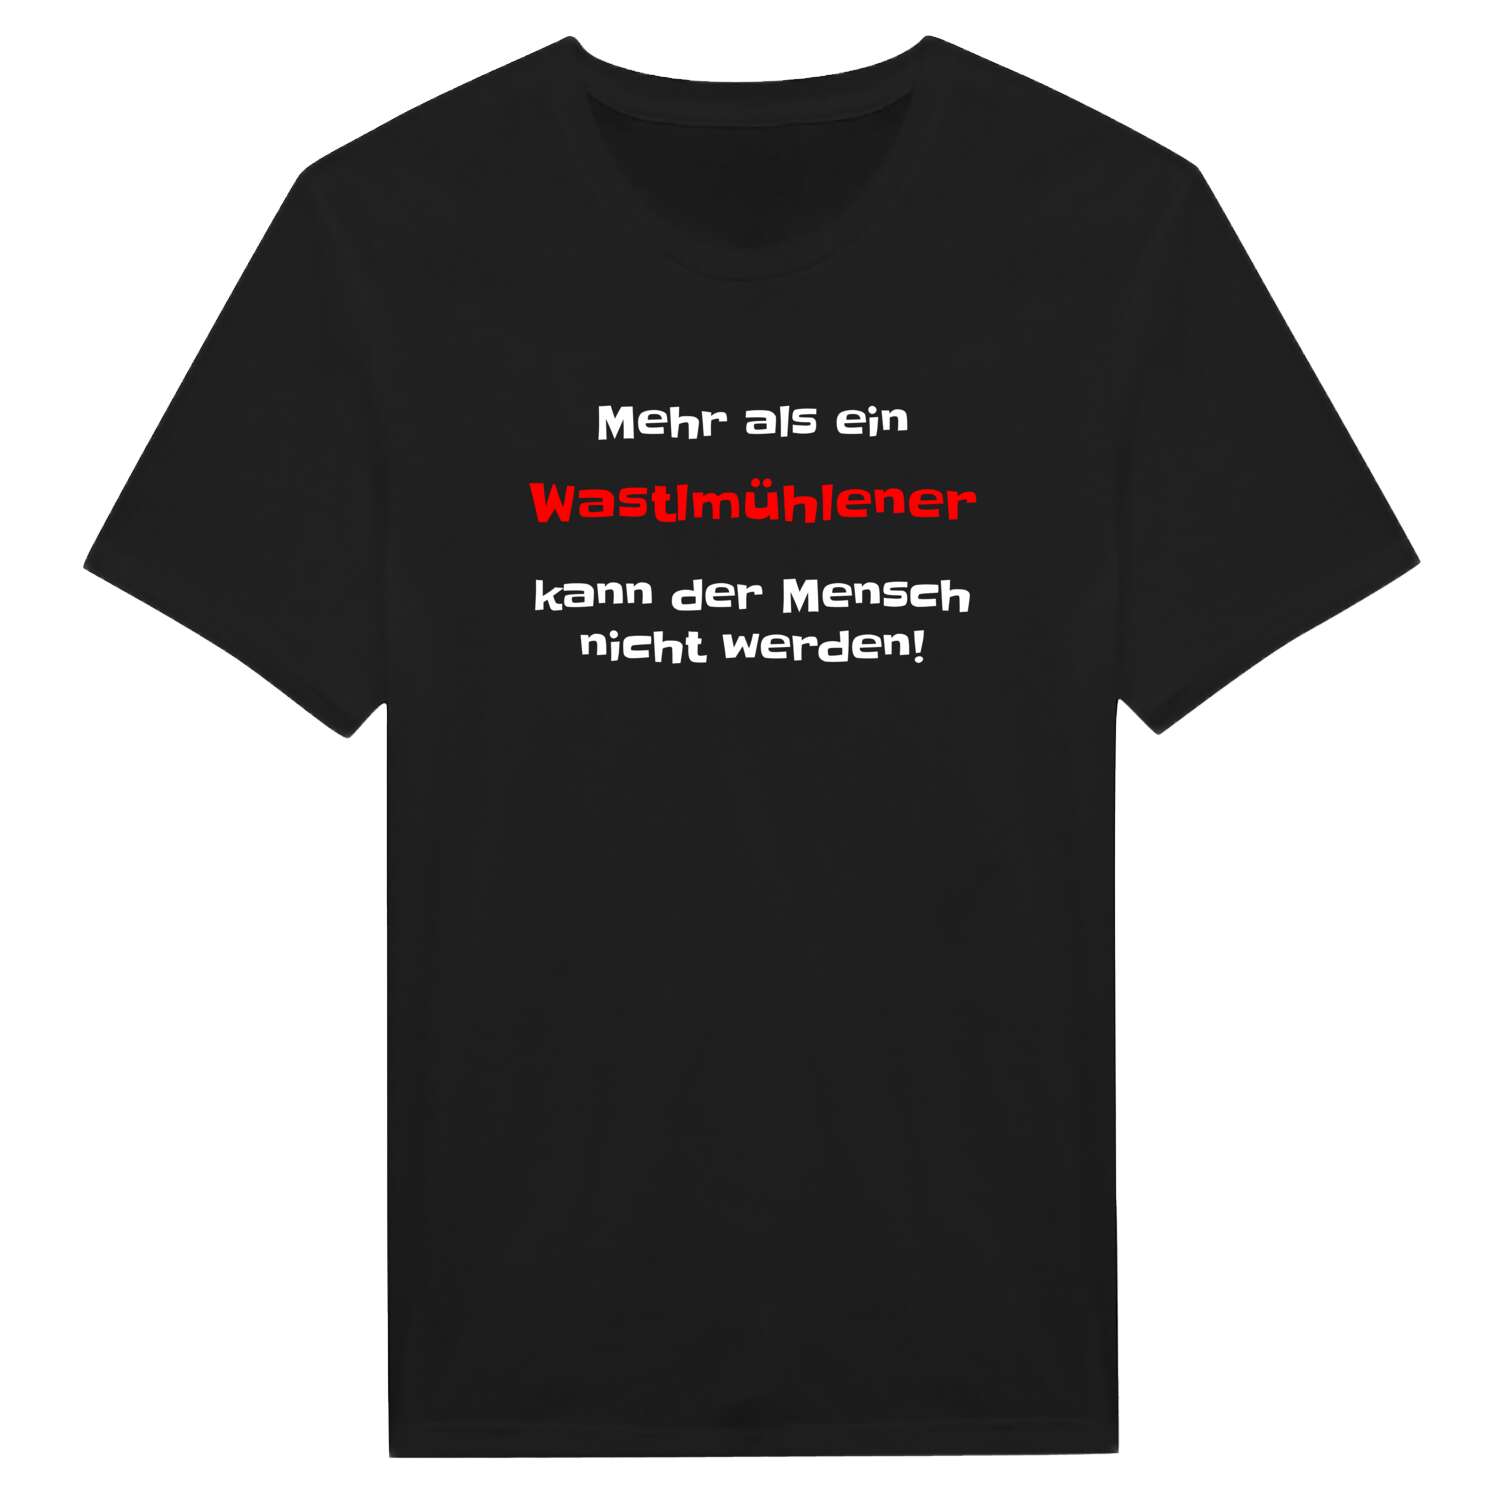 Wastlmühle T-Shirt »Mehr als ein«